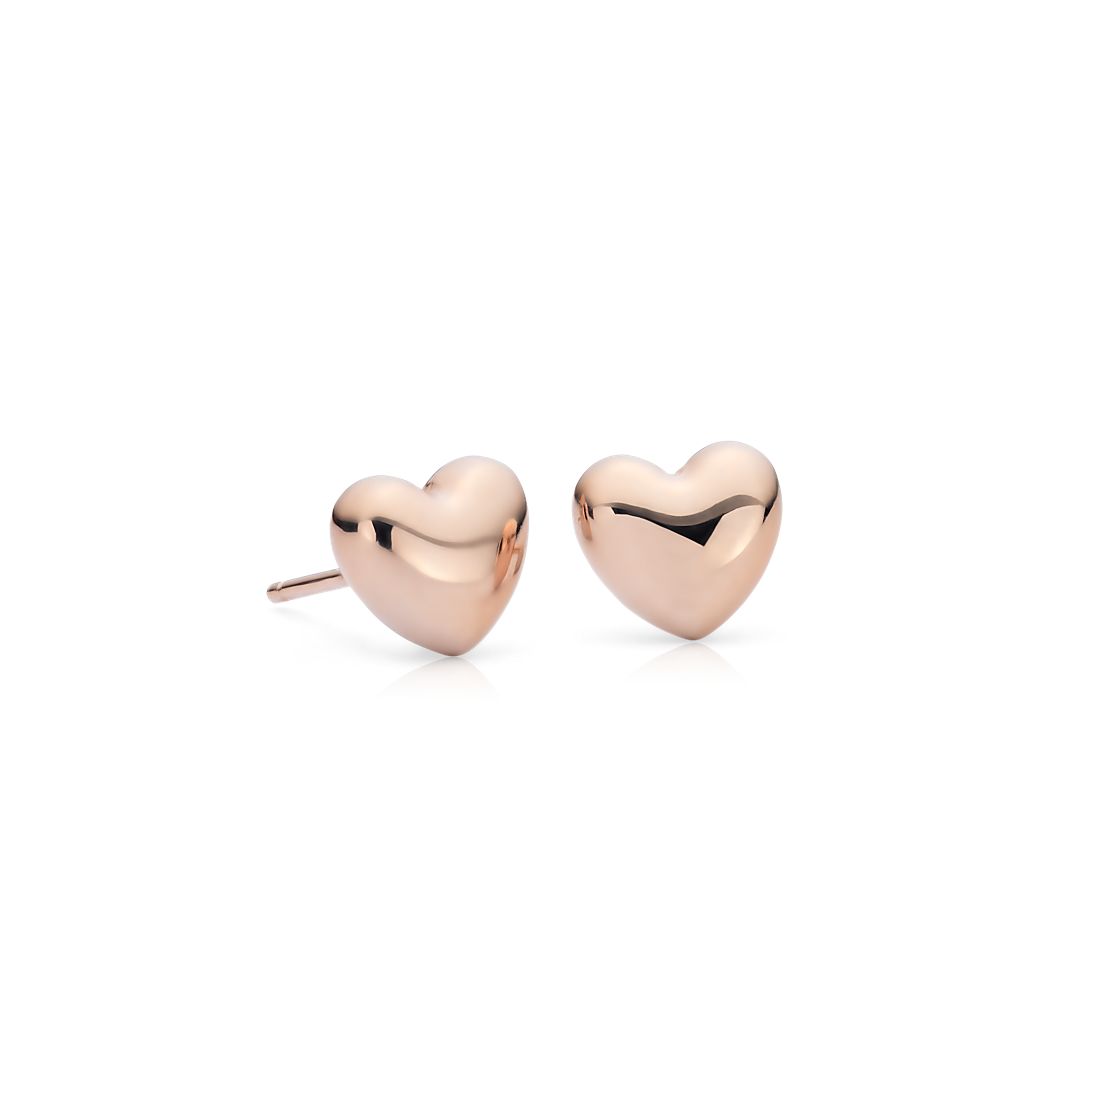 Puff Heart Stud Earrings in 14k Rose Gold 